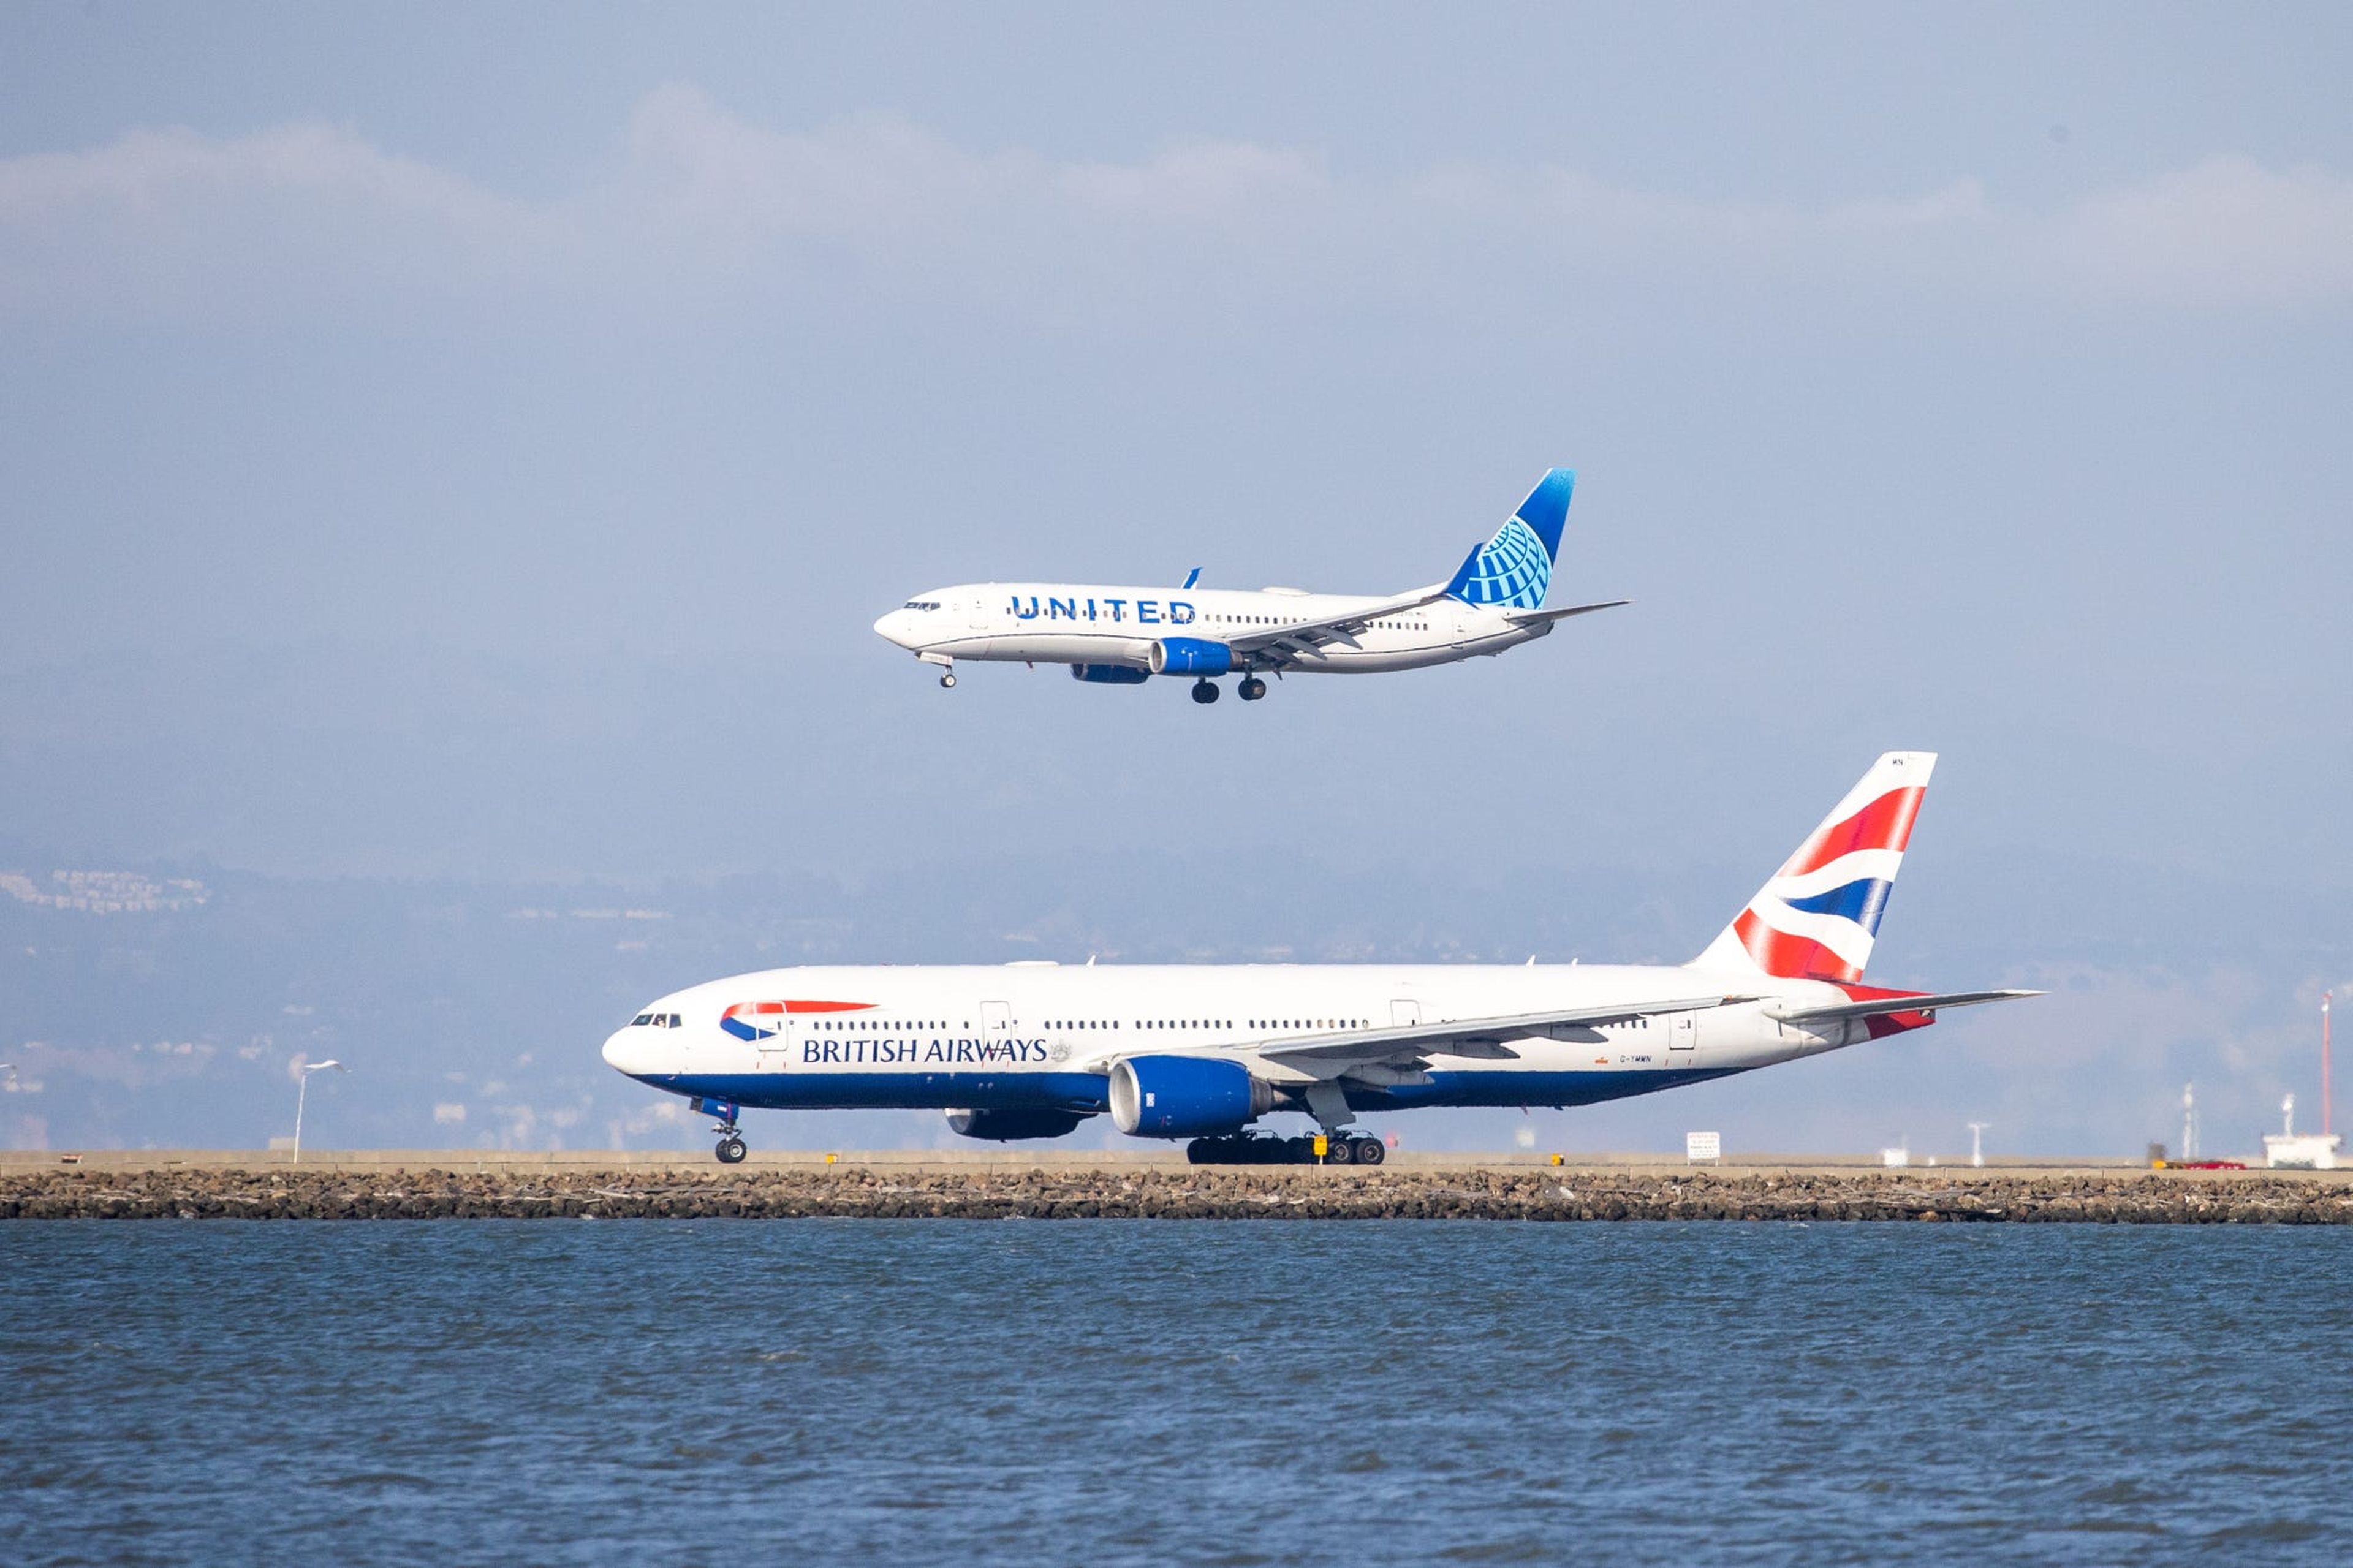 Aviones operados por British Airways y United Airlines.